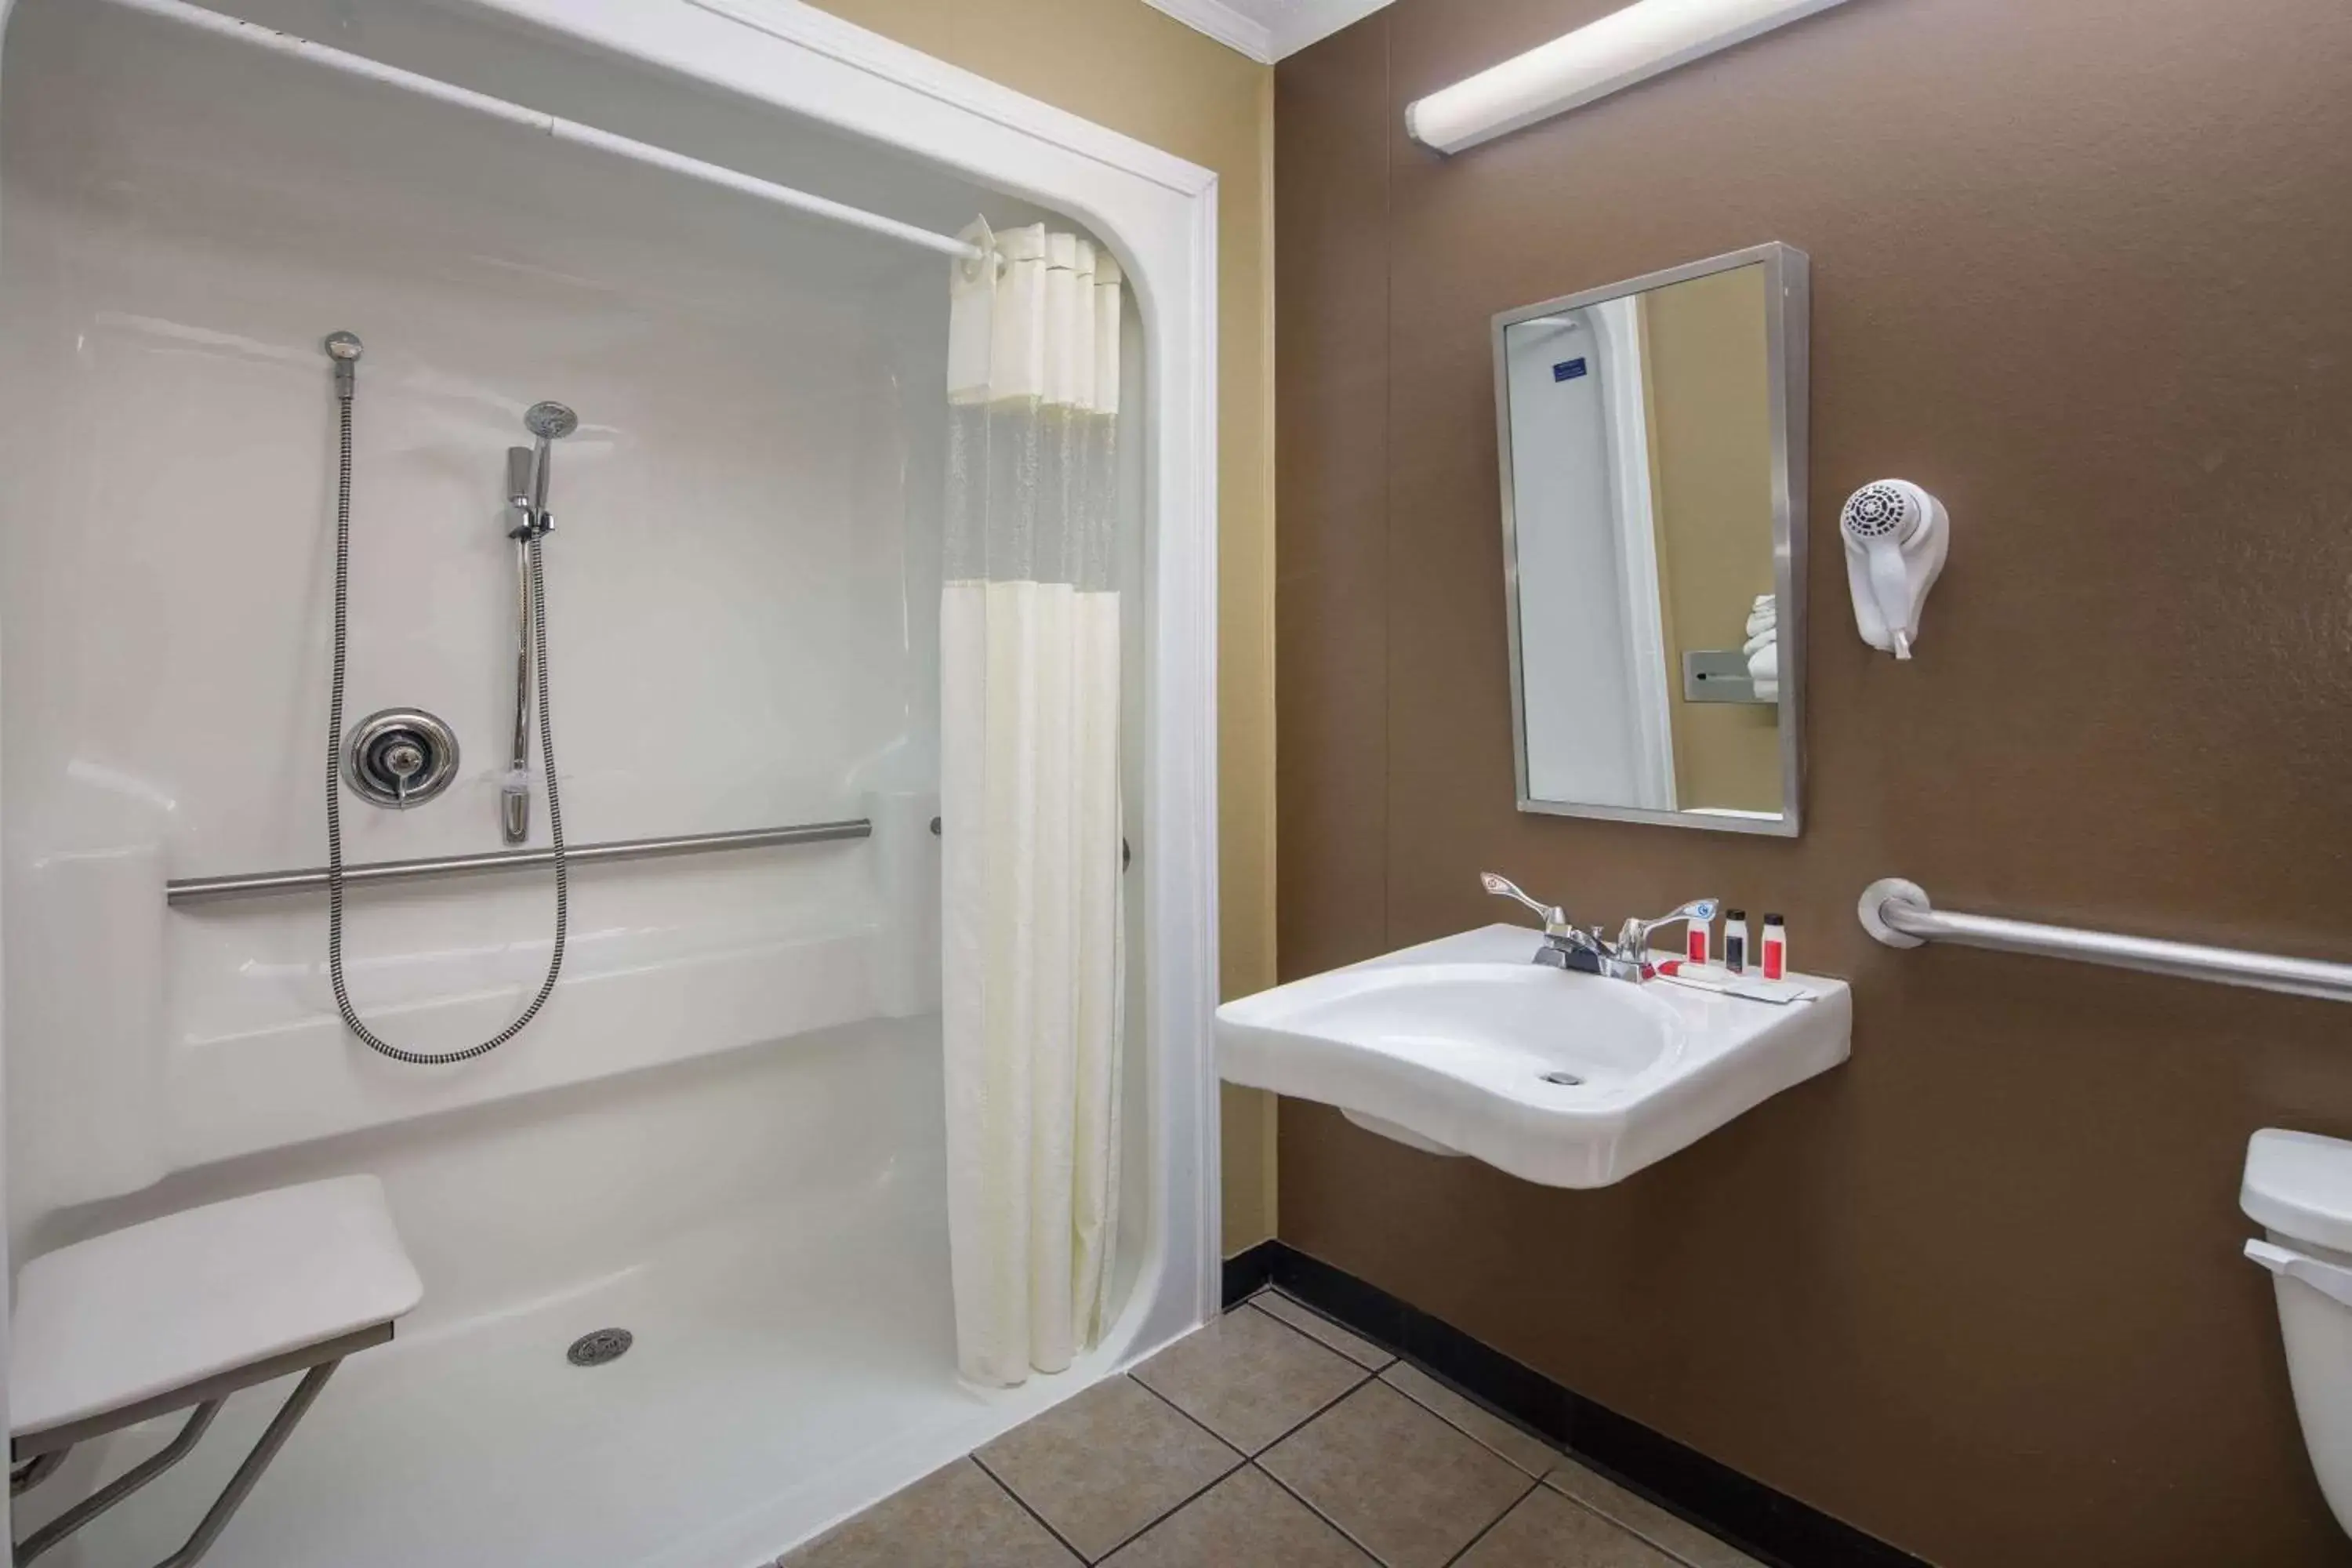 Shower, Bathroom in Microtel Inn & Suites by Wyndham Columbia Fort Jackson N